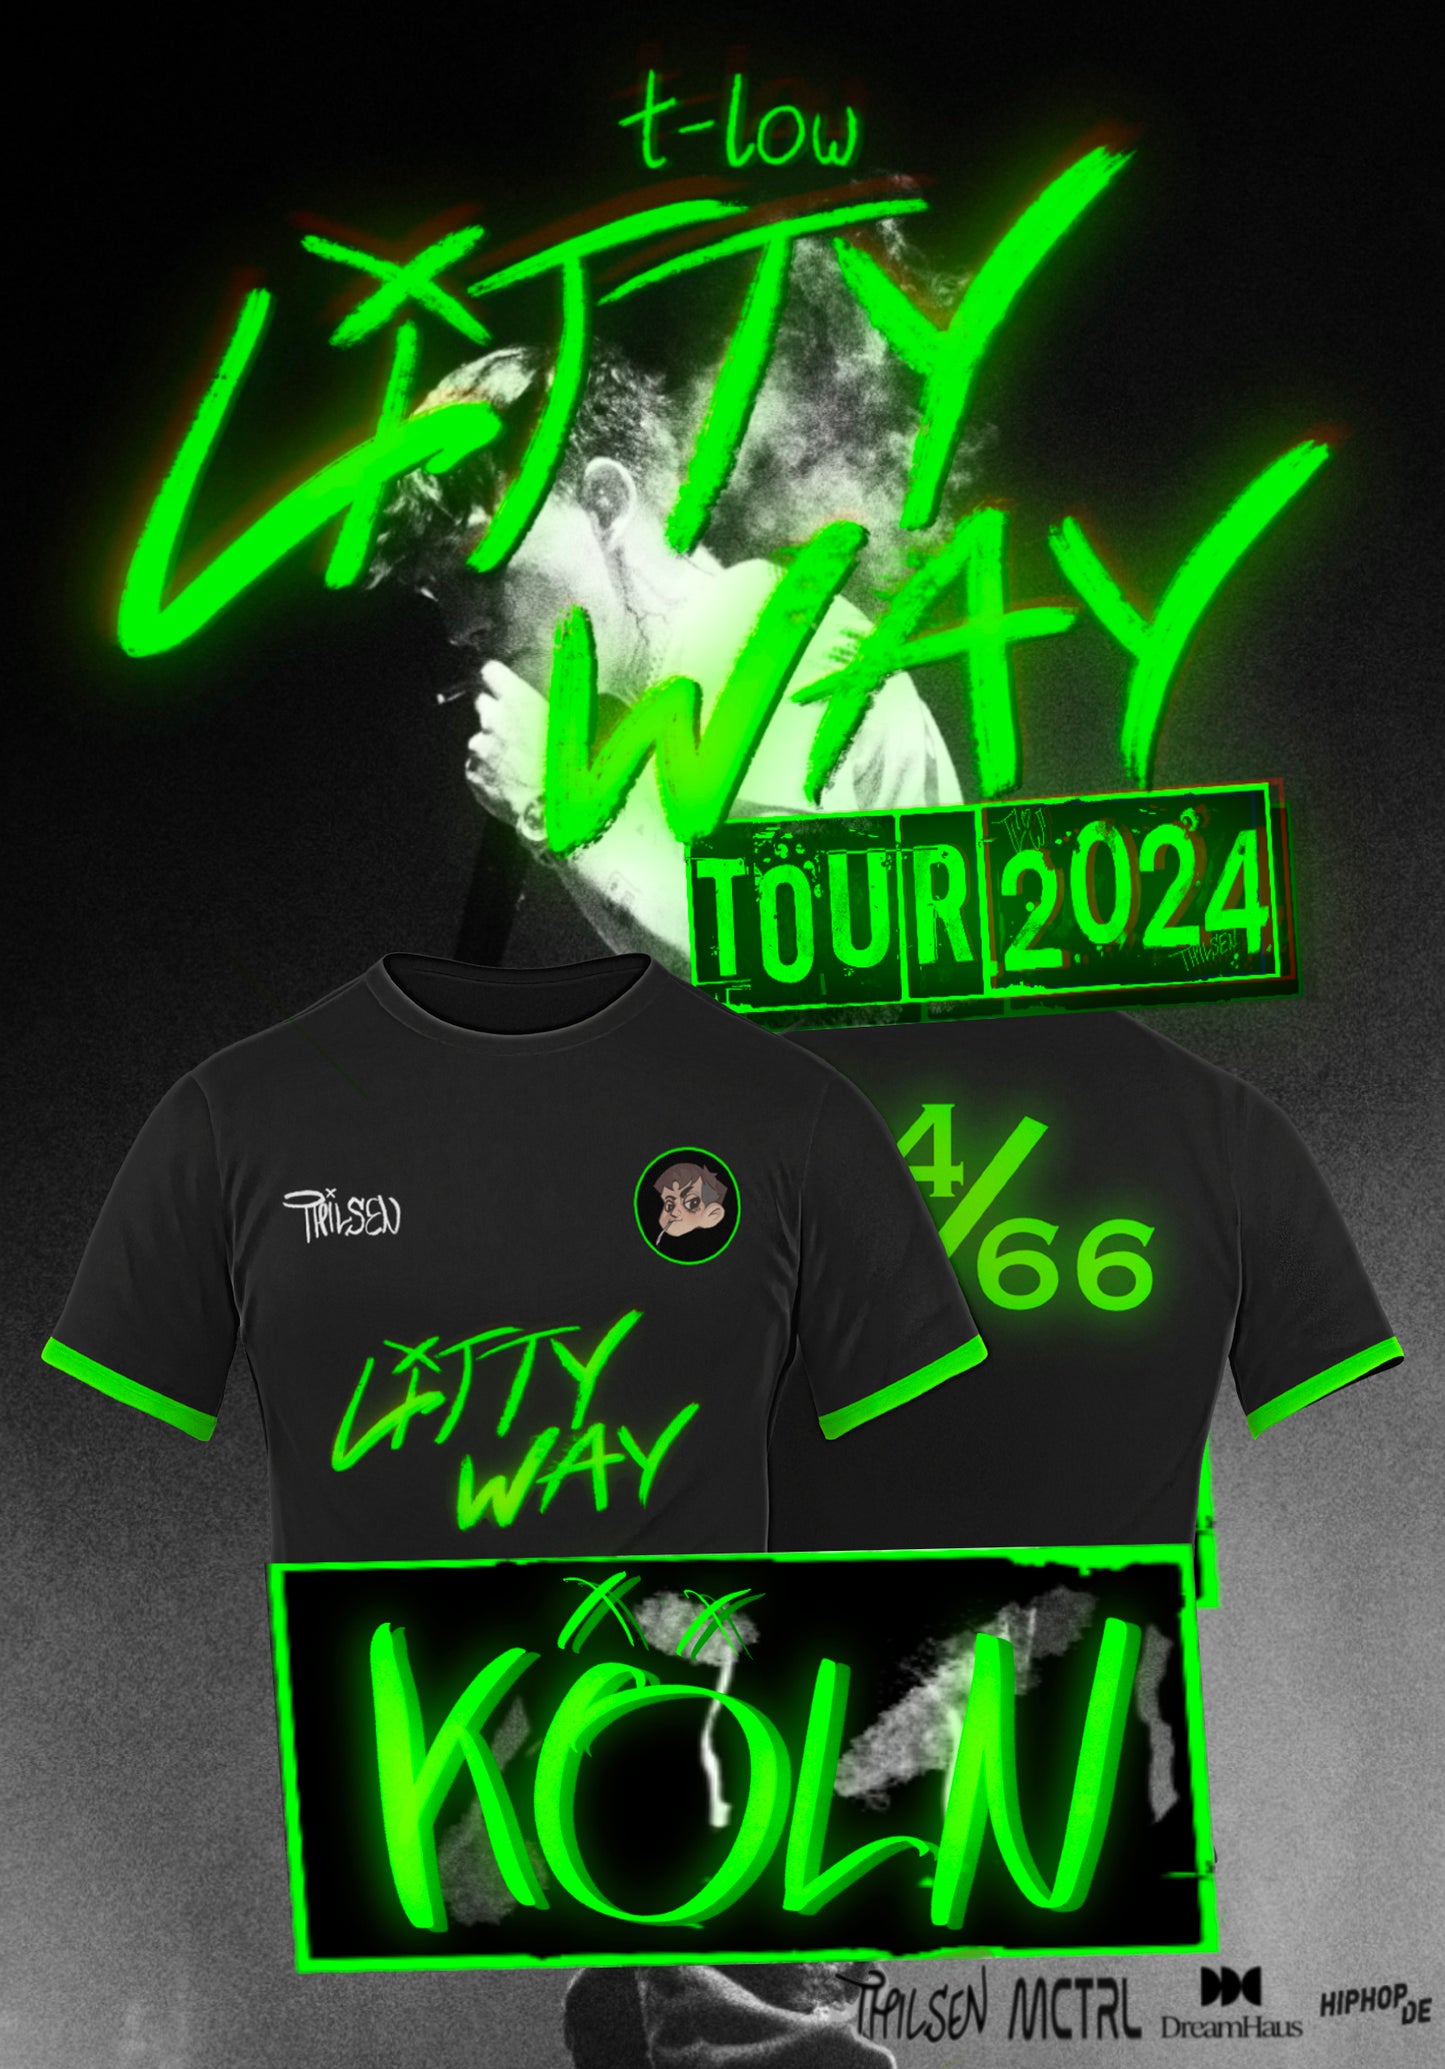 E-Ticket & Trikot Bundle - t-low Litty Way Tour 2024 Köln